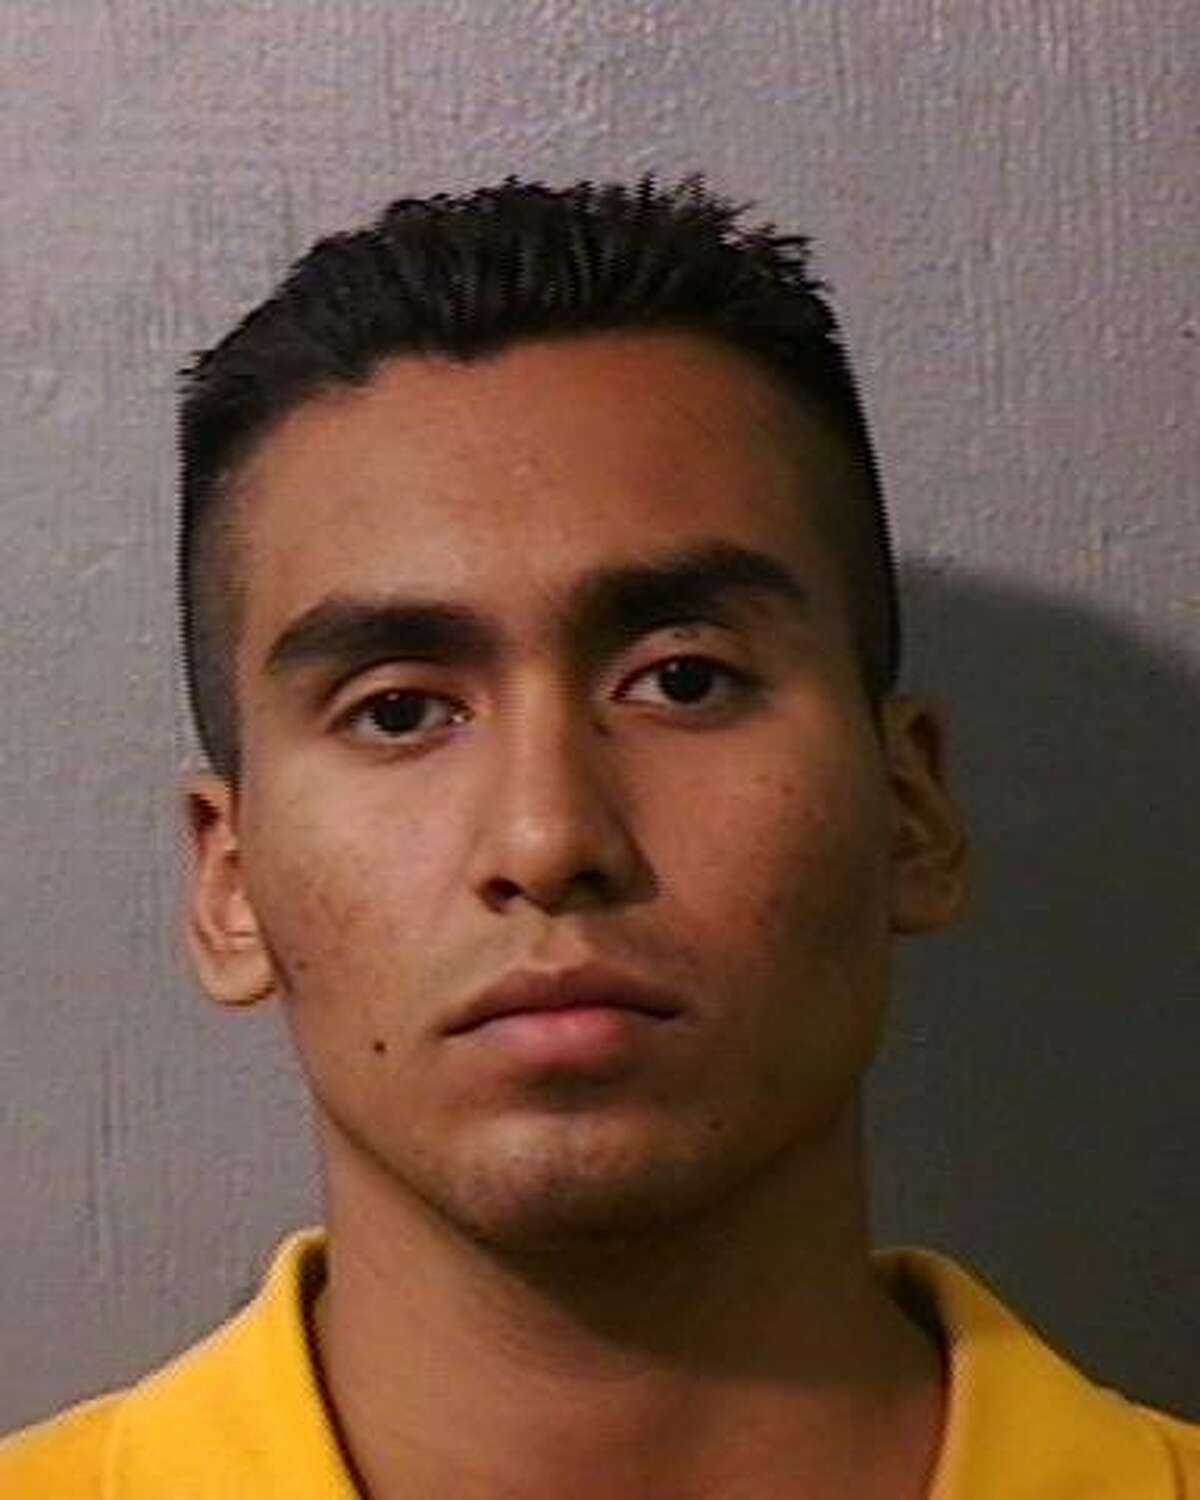 Juan Balderas, 27, is accused of shooting Eduardo Hernandez during a burglary in 2005.